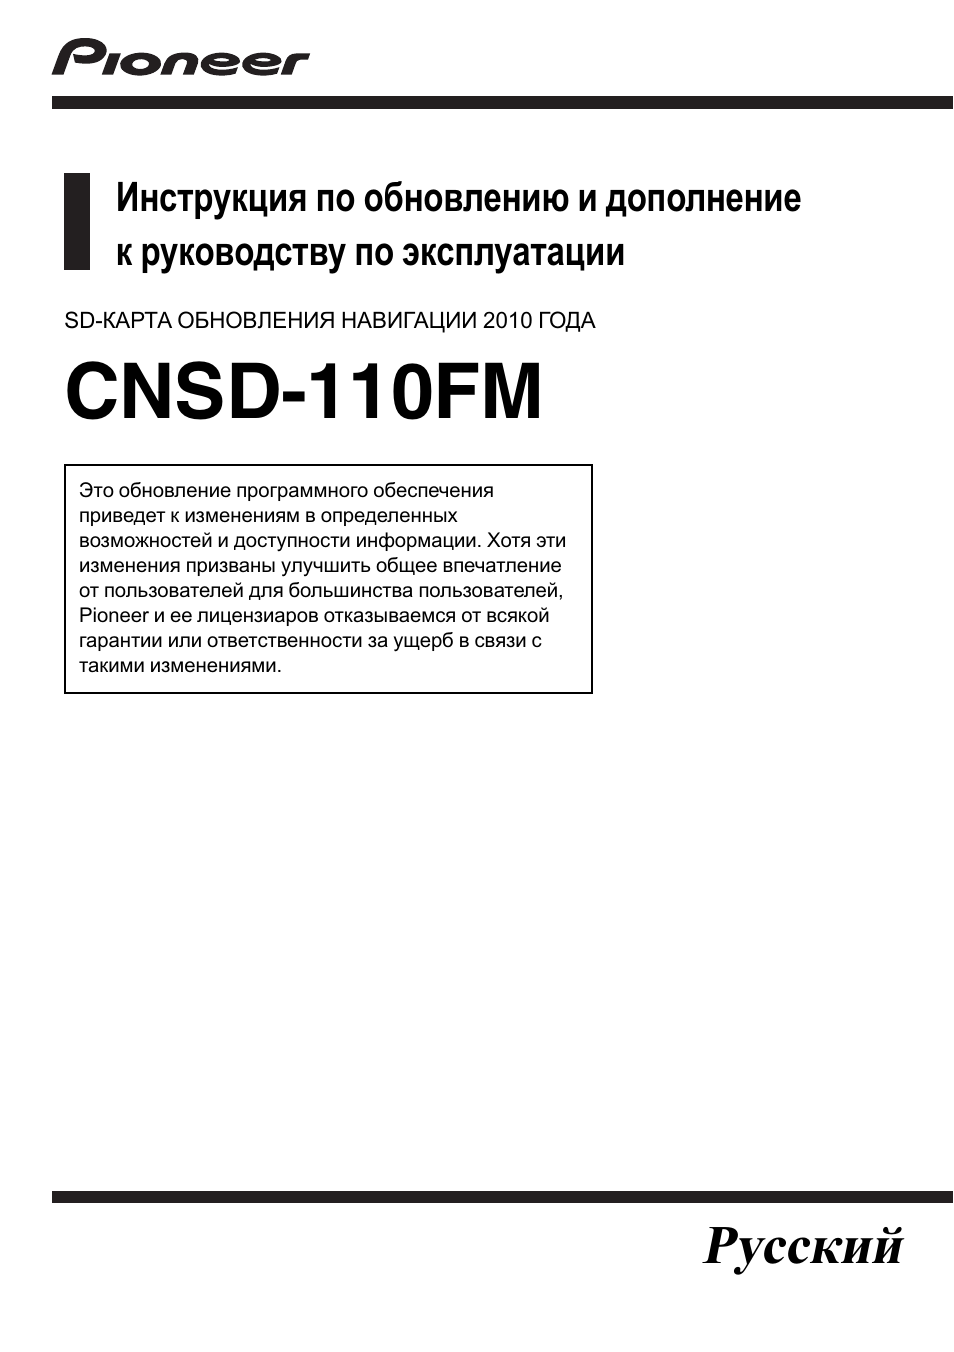 Инструкция по эксплуатации Pioneer CNSD-110FM-Russian | 36 страниц